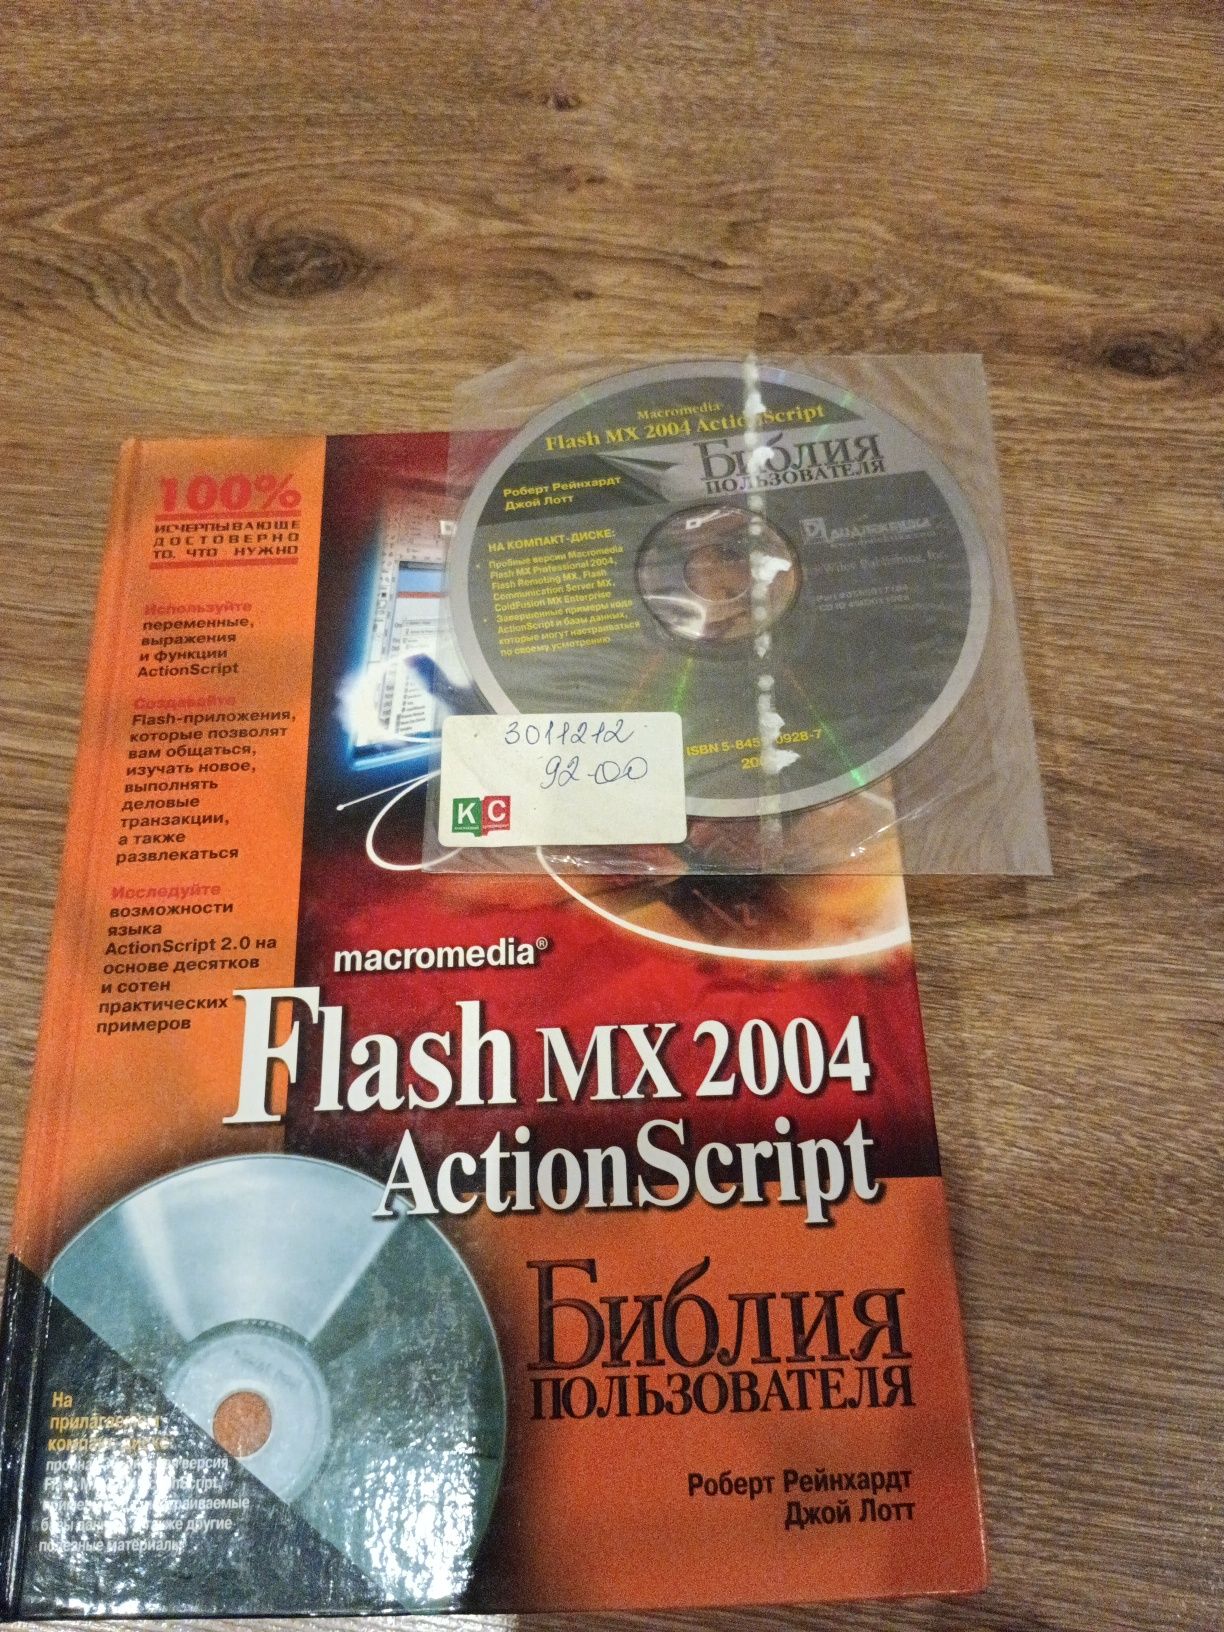 Flash mx 2004 Action Script